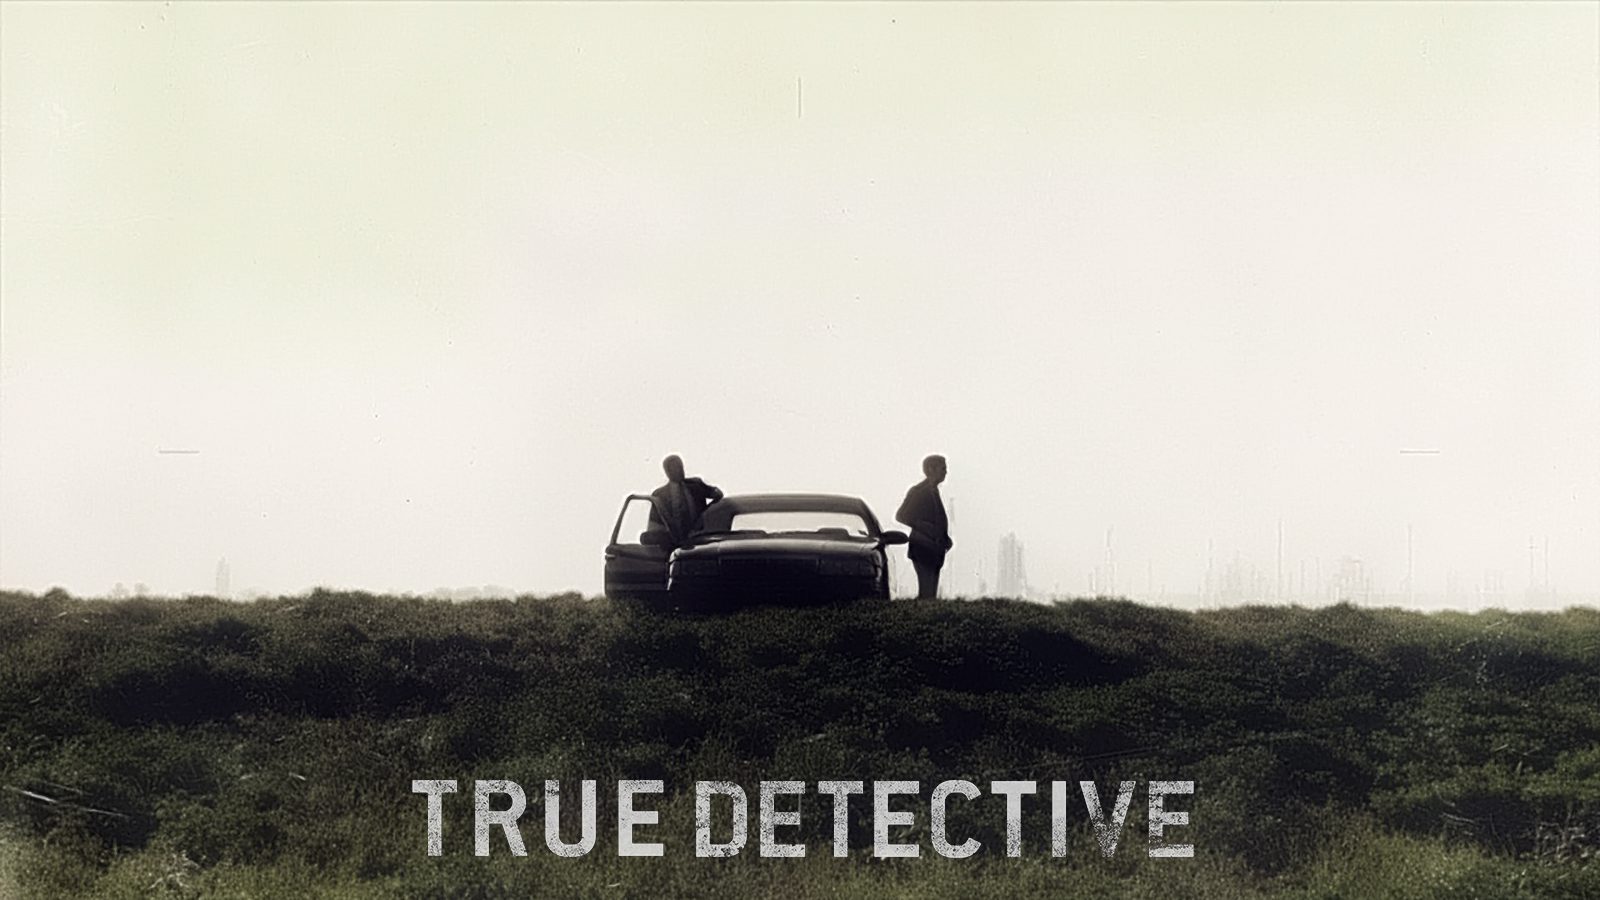 True-Detective-wallpapers-4